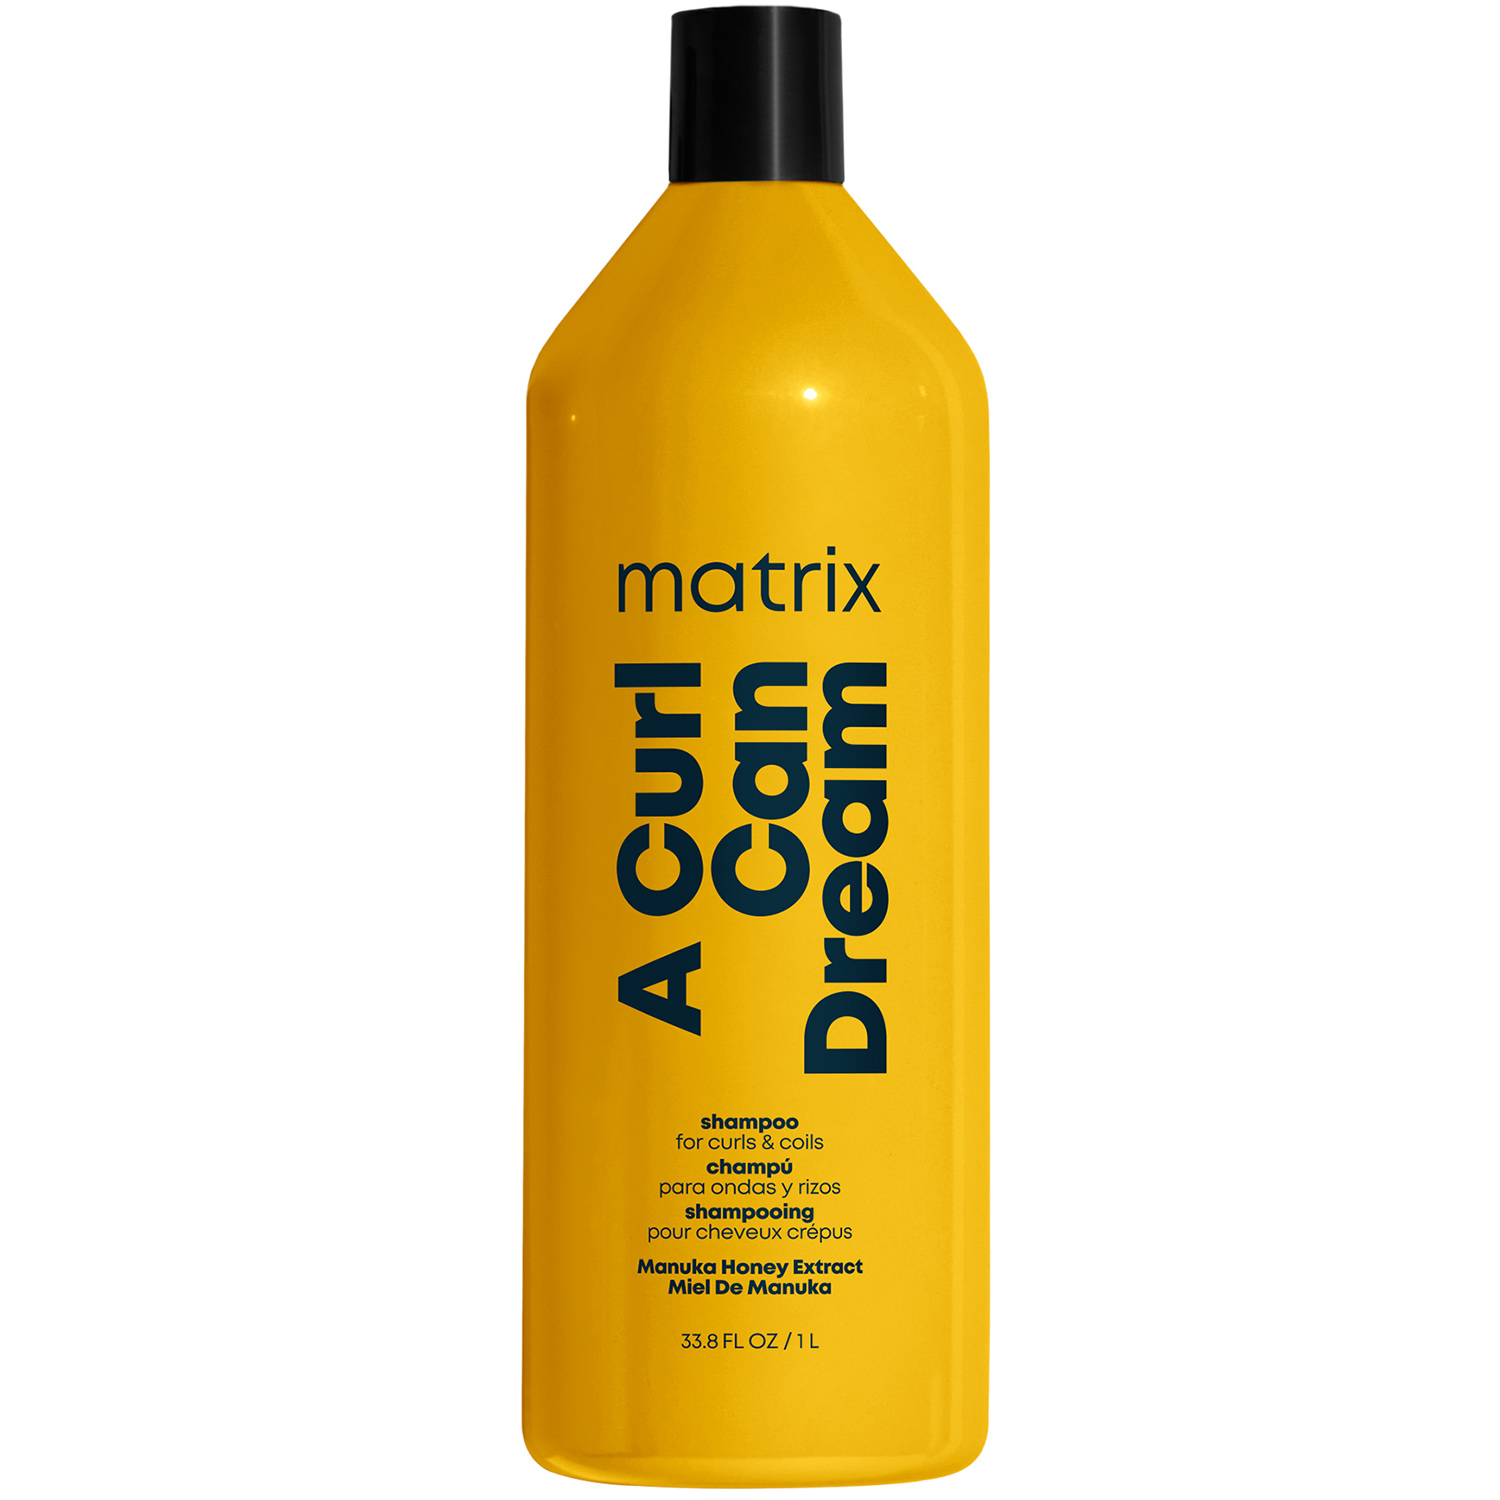 Matrix Шампунь с медом манука для кудрявых и вьющихся волос, 1000 мл (Matrix, Total results) matrix a curl can dream light hold gel for curls